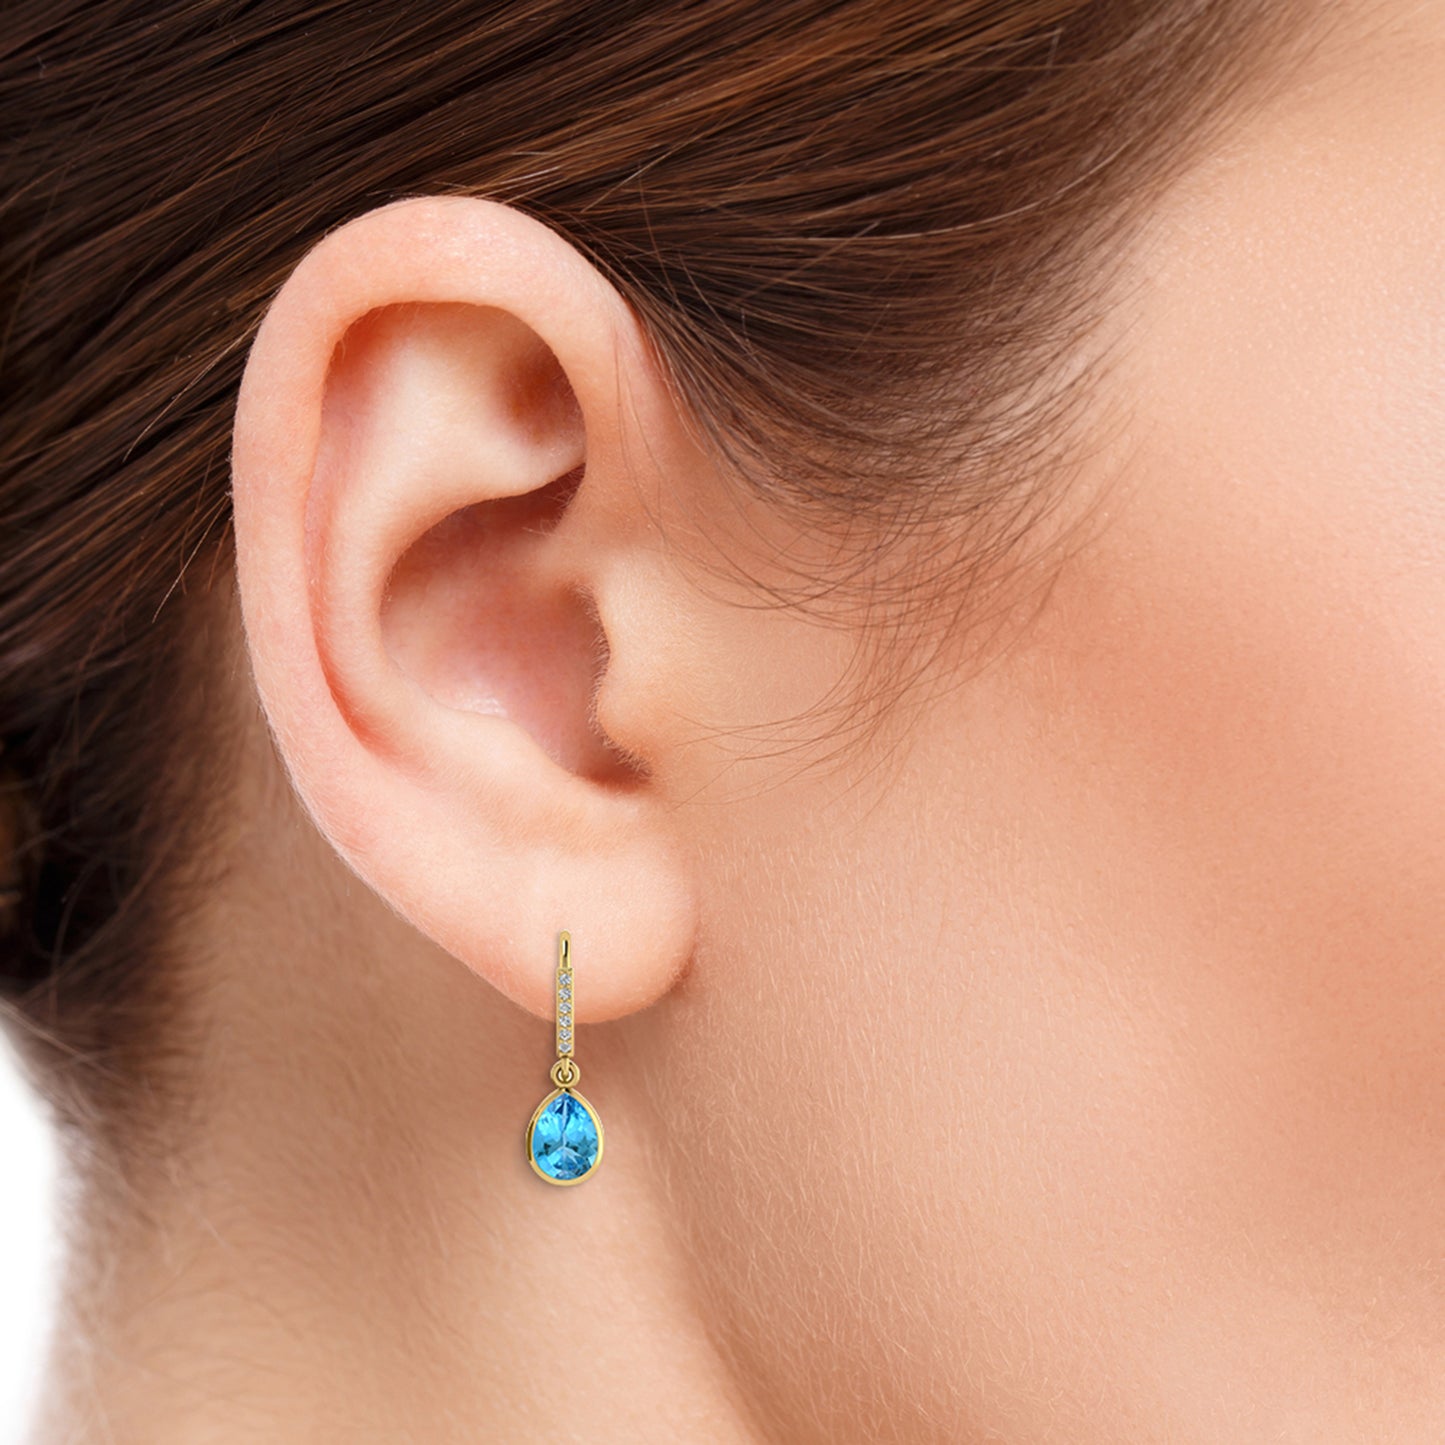 Genuine Diamond Dangle Earrings 14k Solid Gold 1.2ct Swiss Blue Topaz Drop Earring